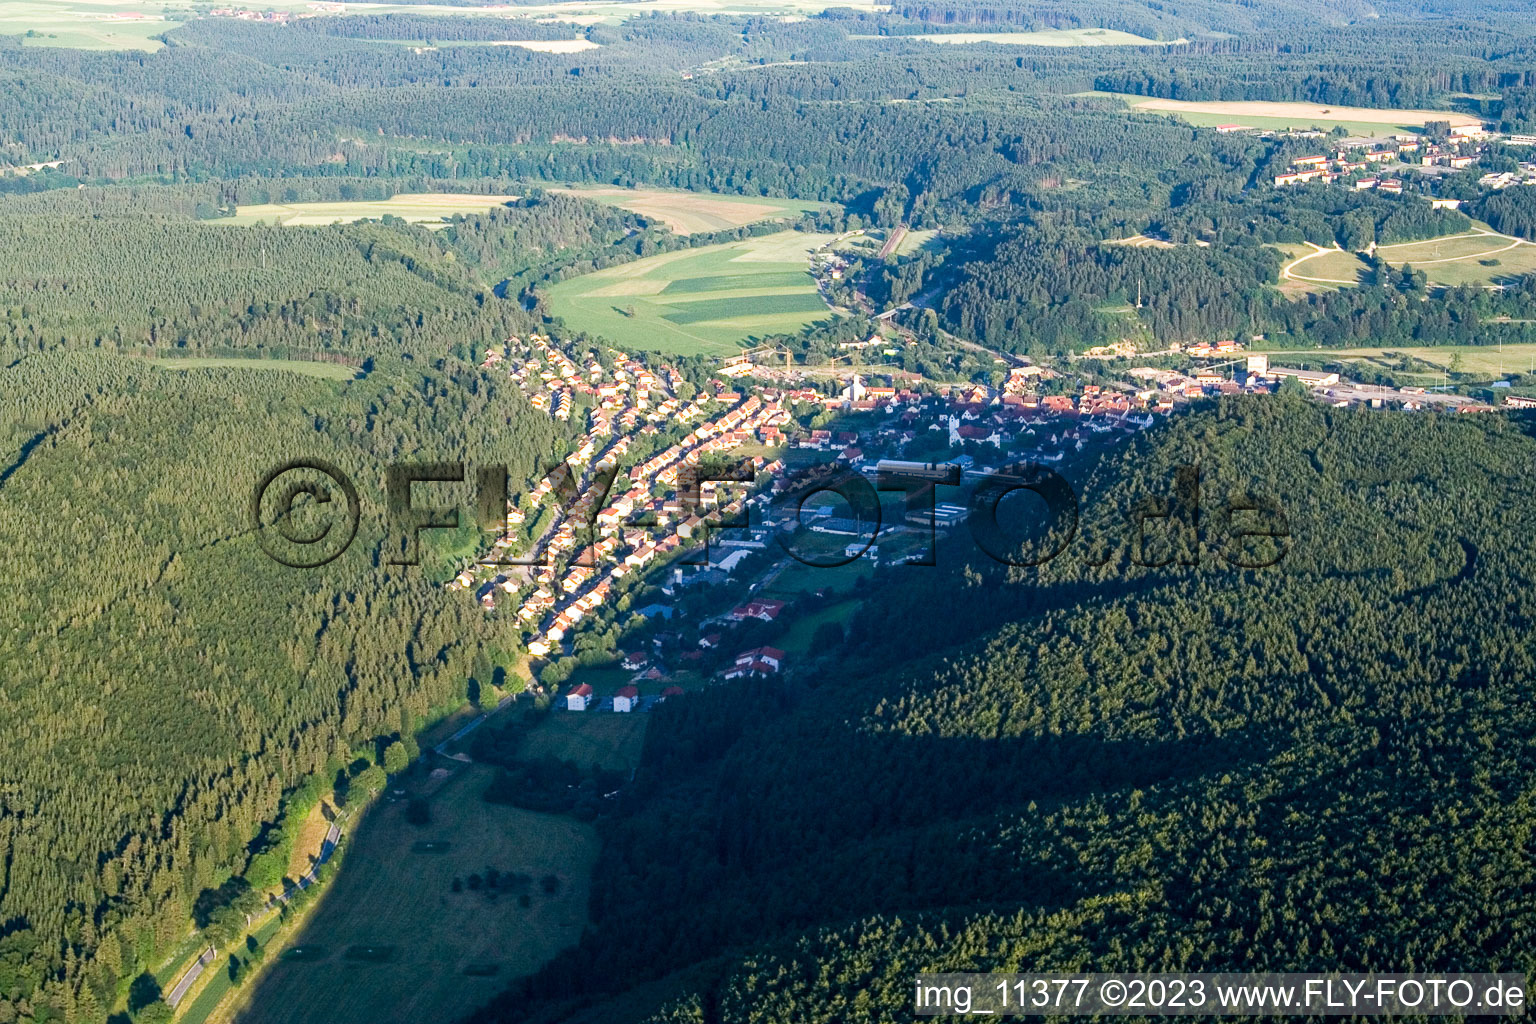 Immendingen dans le département Bade-Wurtemberg, Allemagne vu d'un drone